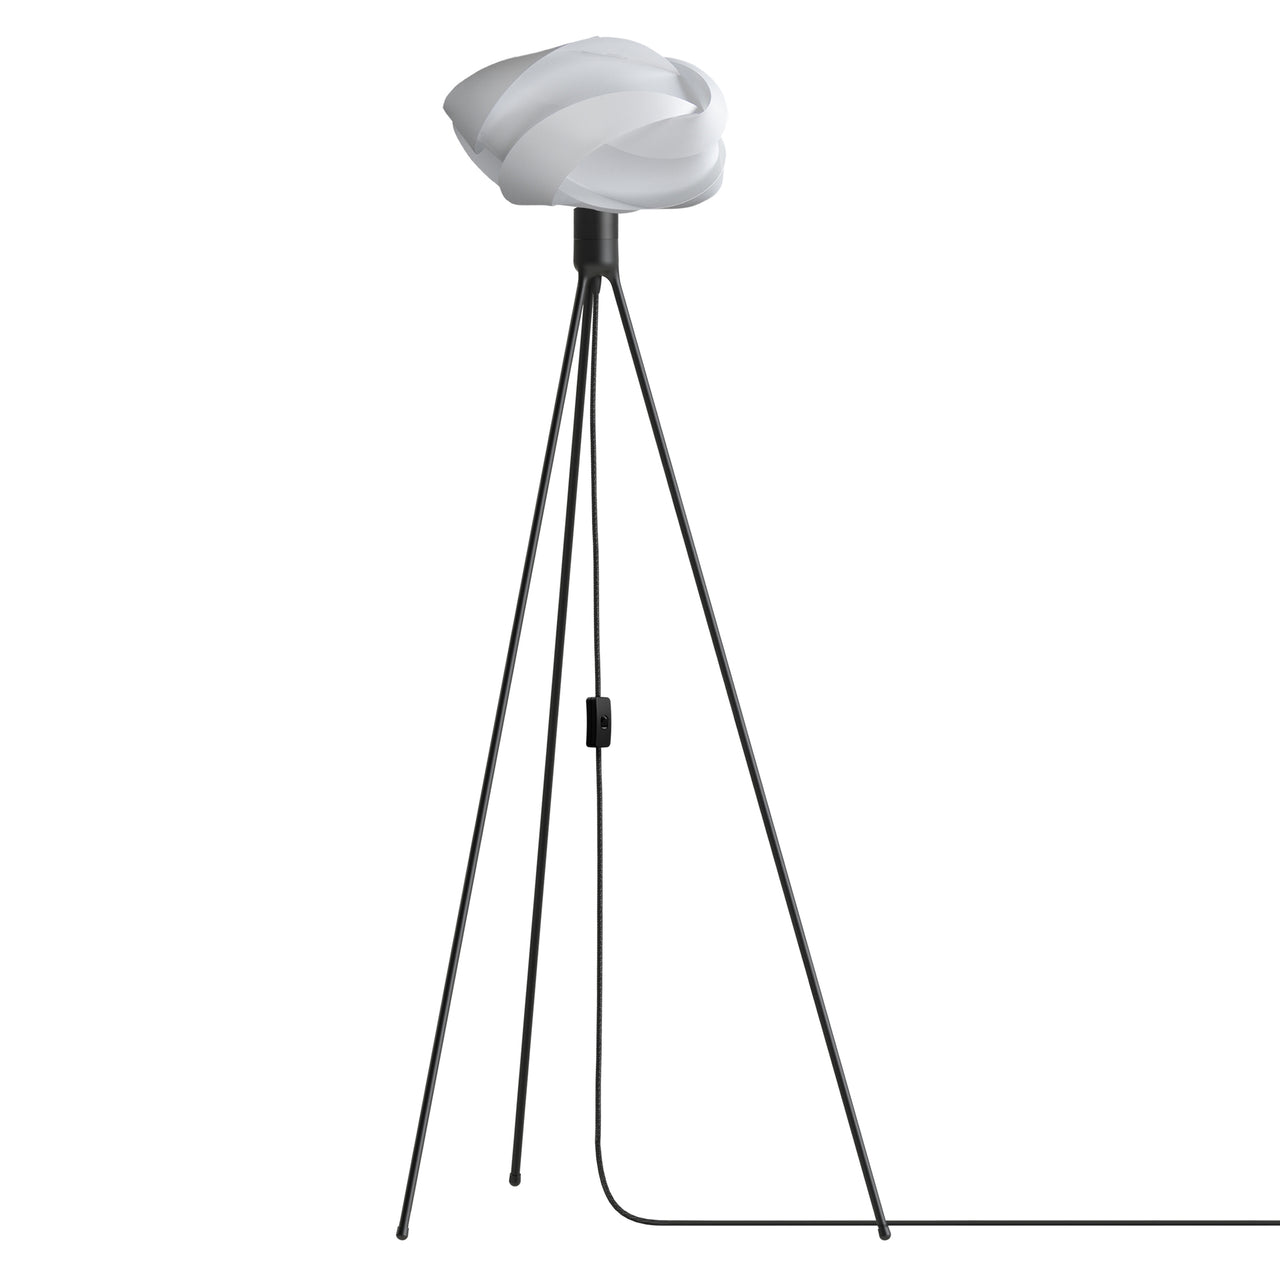 Ribbon Tripod Floor Lamp: Medium - 23